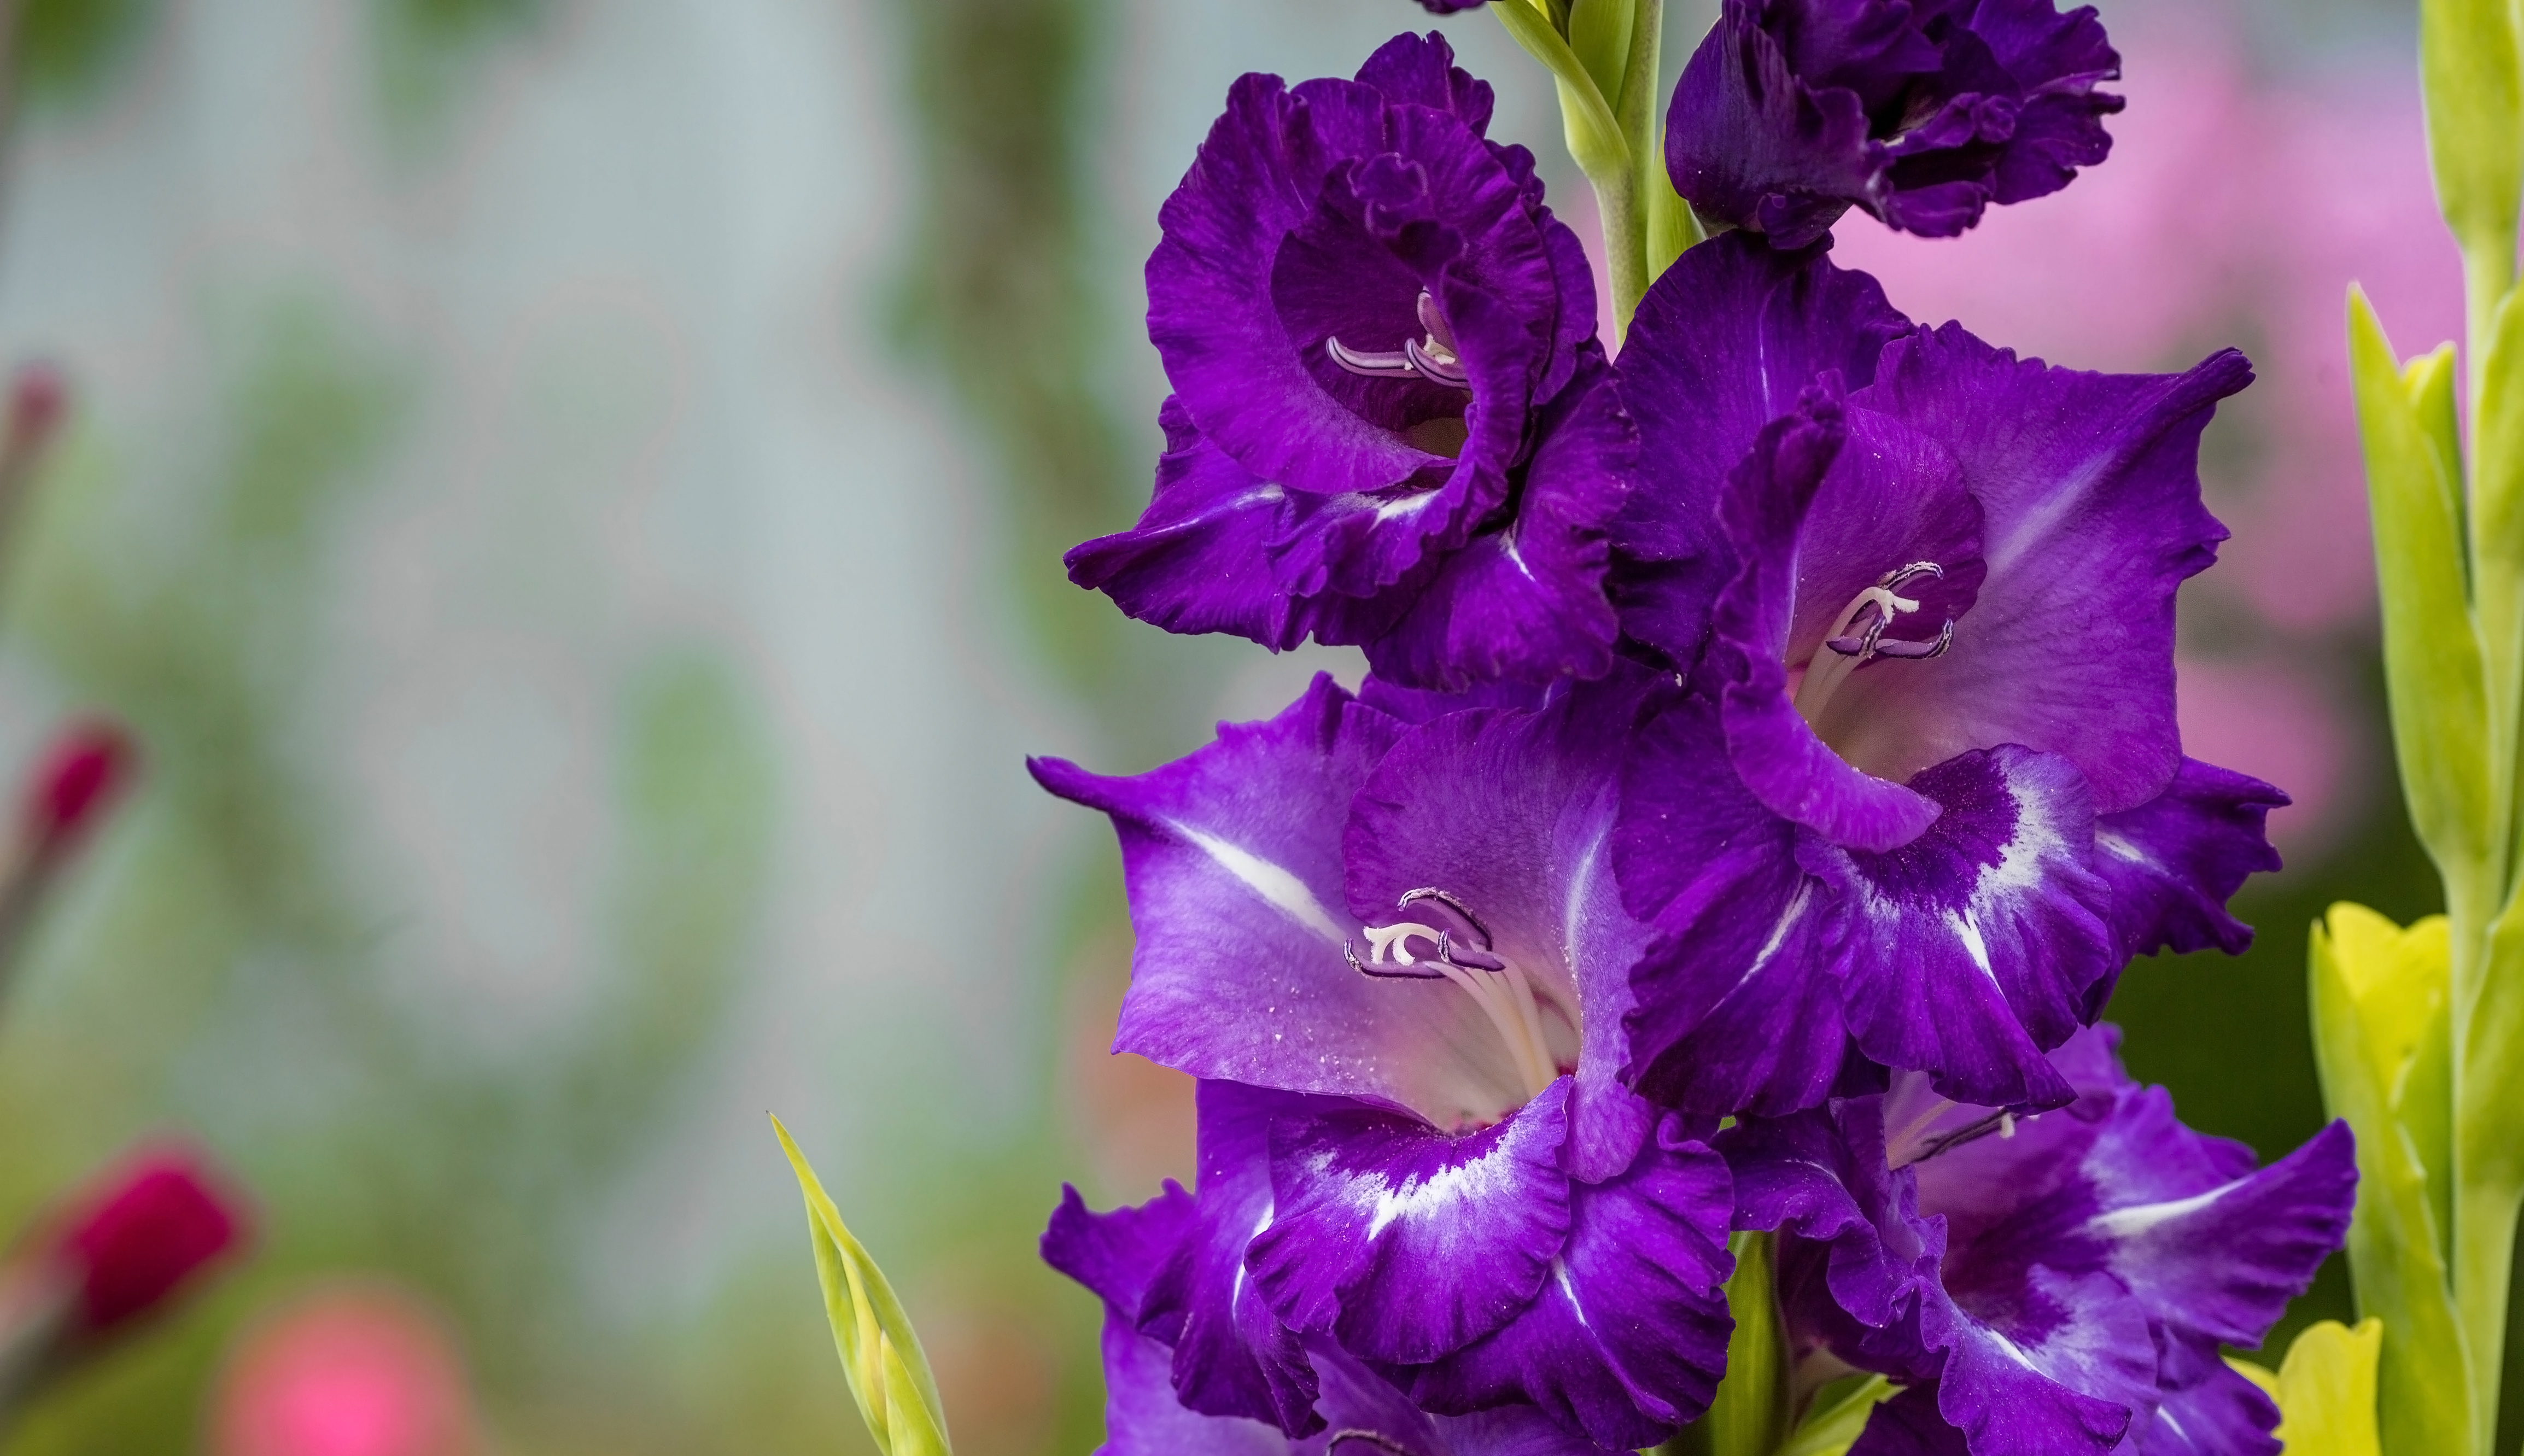 Deep purple gladioli flowers